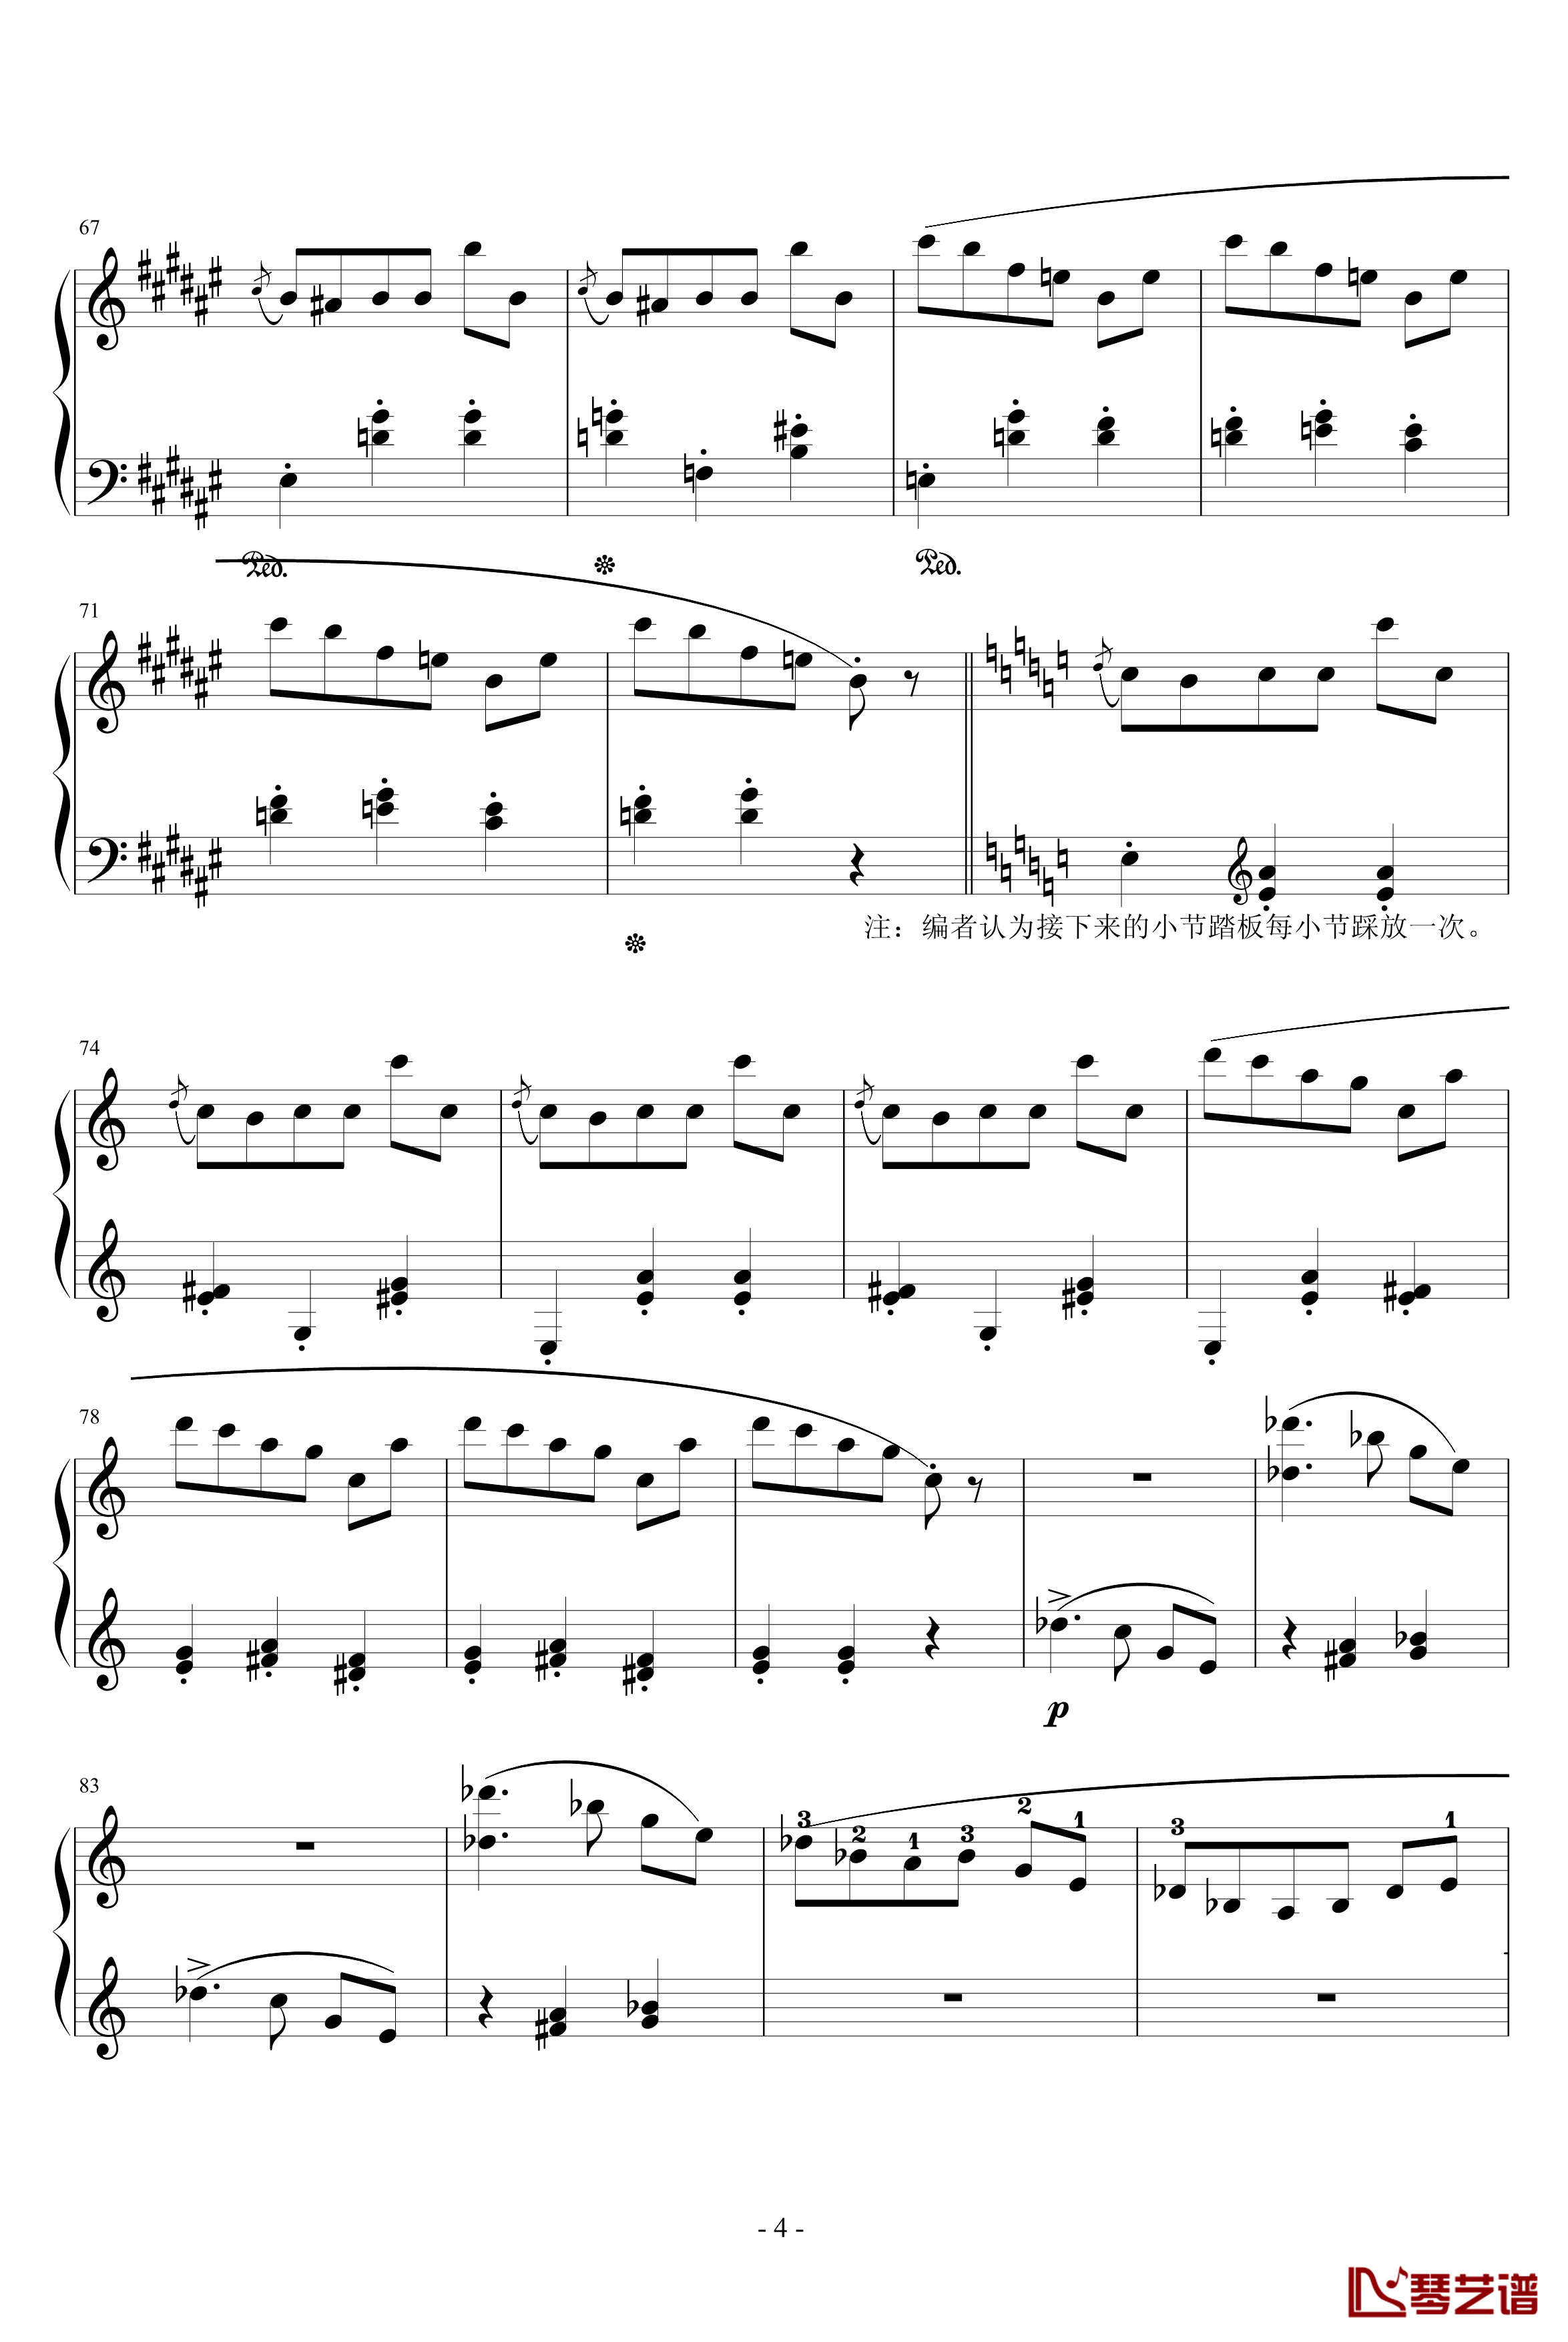 第一首被遗忘的圆舞曲钢琴谱-第一部分-李斯特